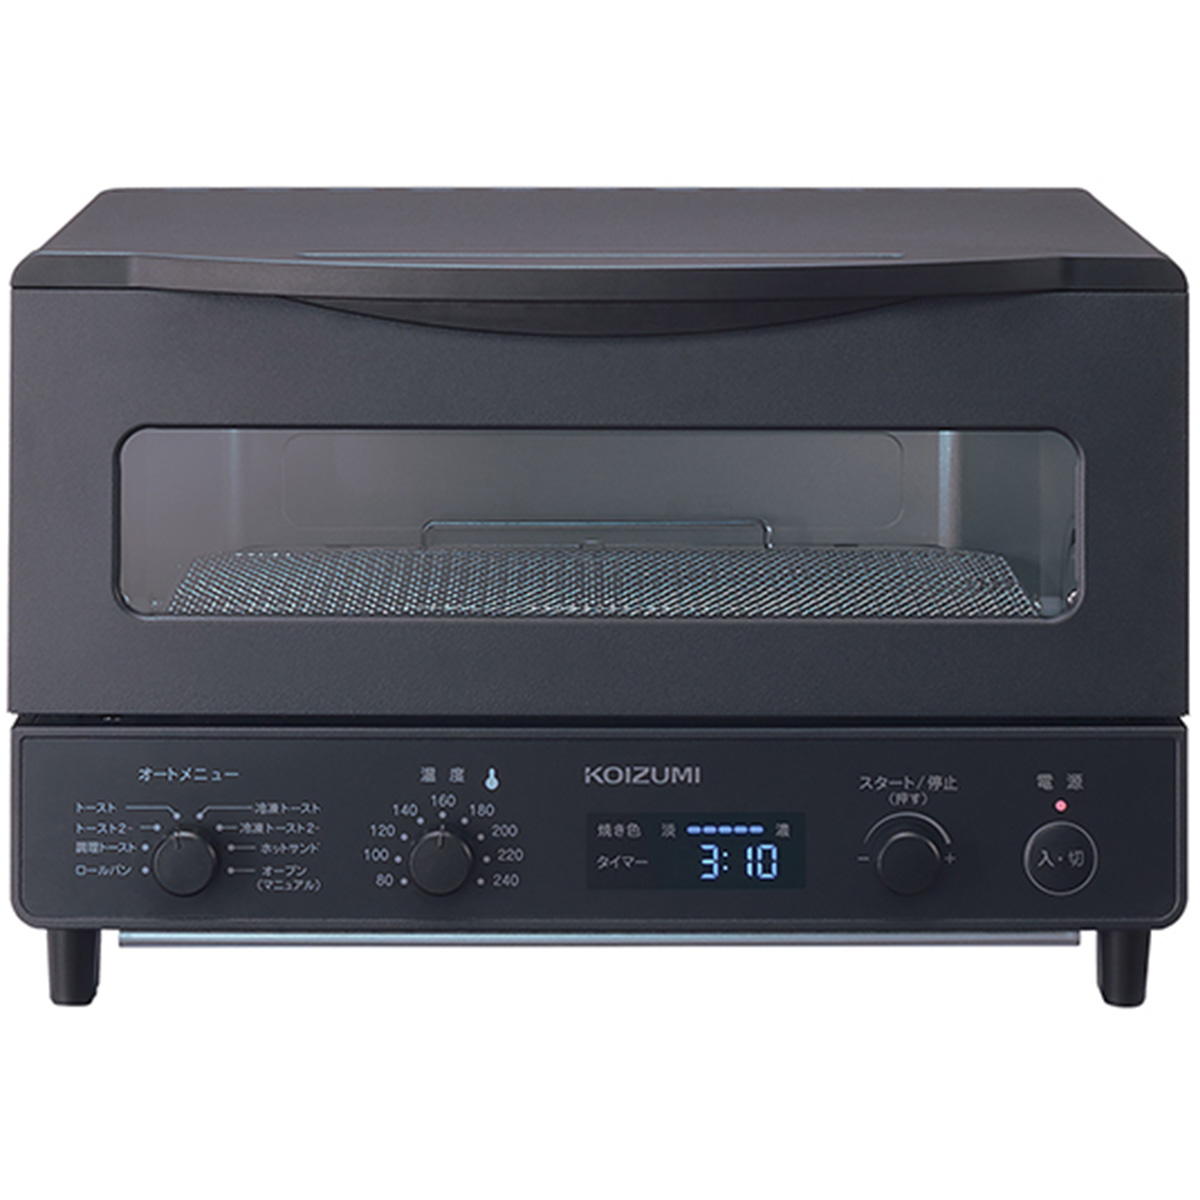 オーブントースター 1225W 温度調節 焼き色調節 タイマー 4枚焼き ブラック